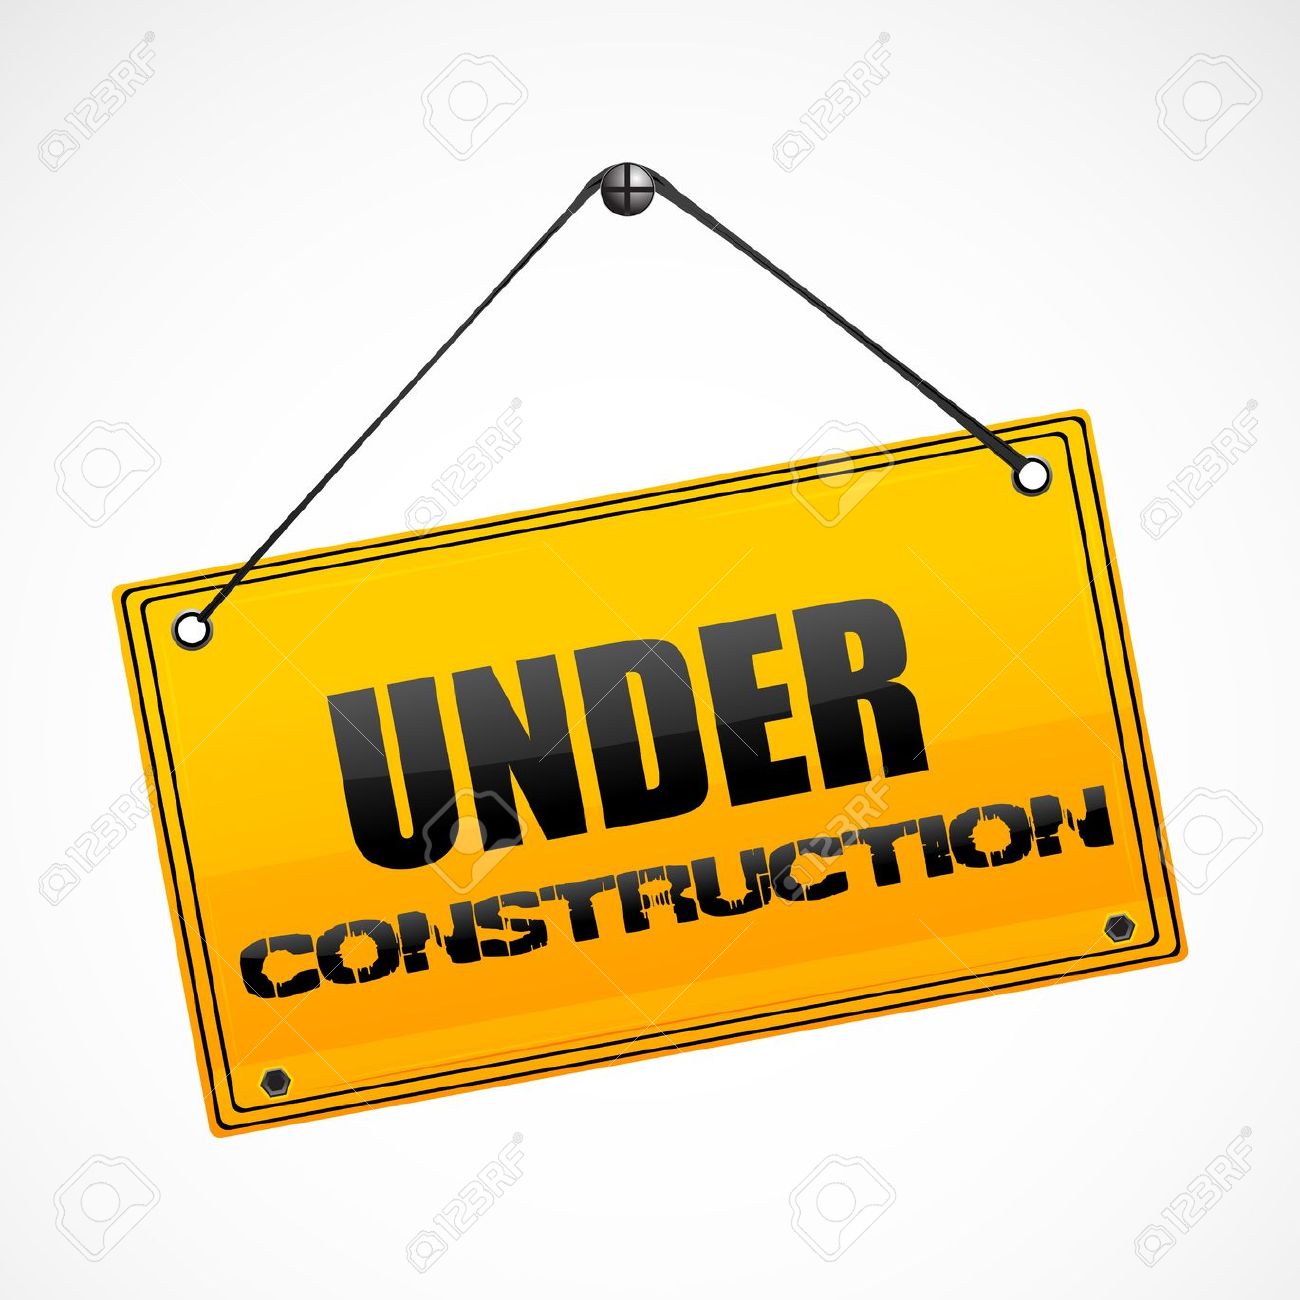 8302798-illustration-of-under-construction-board-stock-vector-construction-sign.jpg